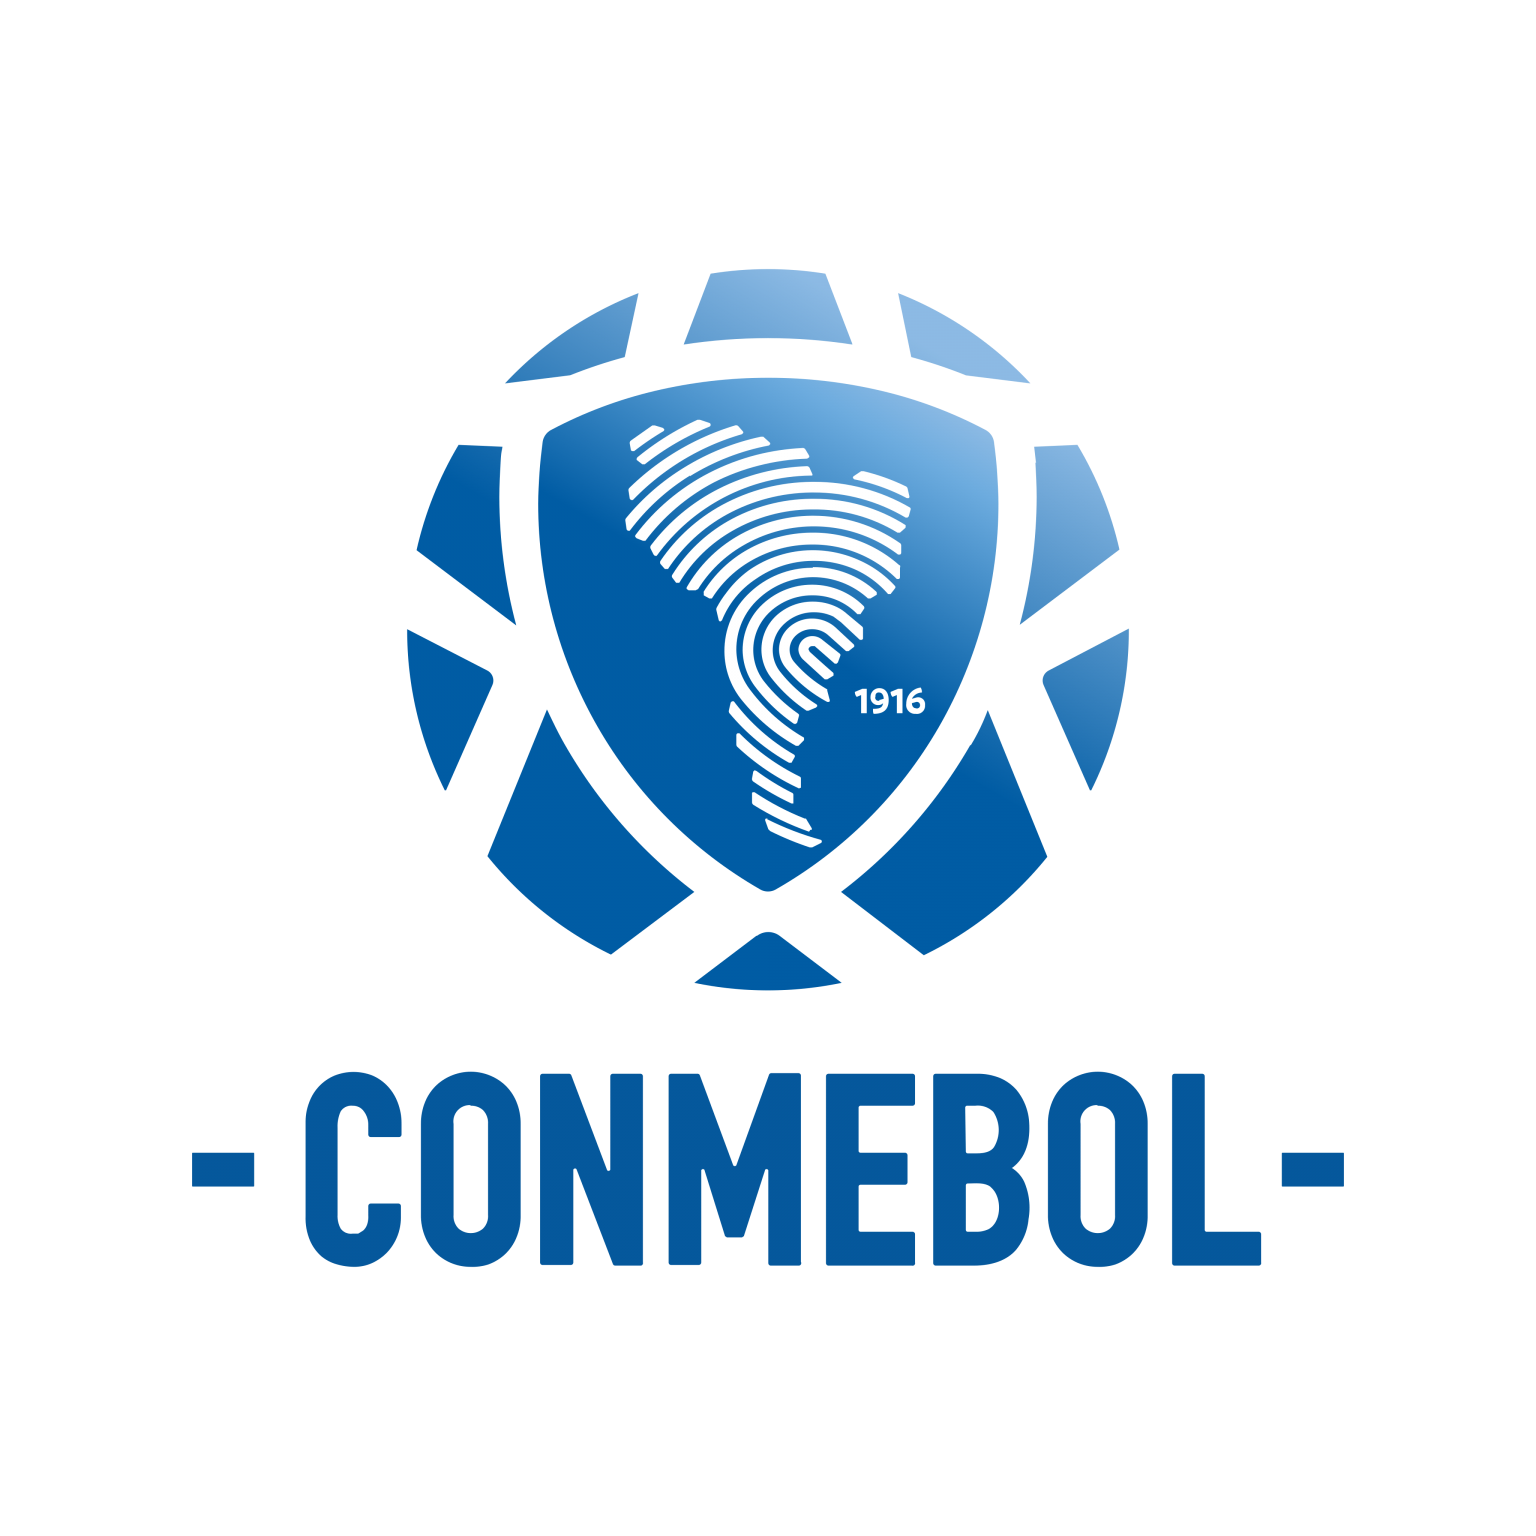 https://0201.nccdn.net/1_2/000/000/103/496/conmebol-logo-0-1536x1536.png